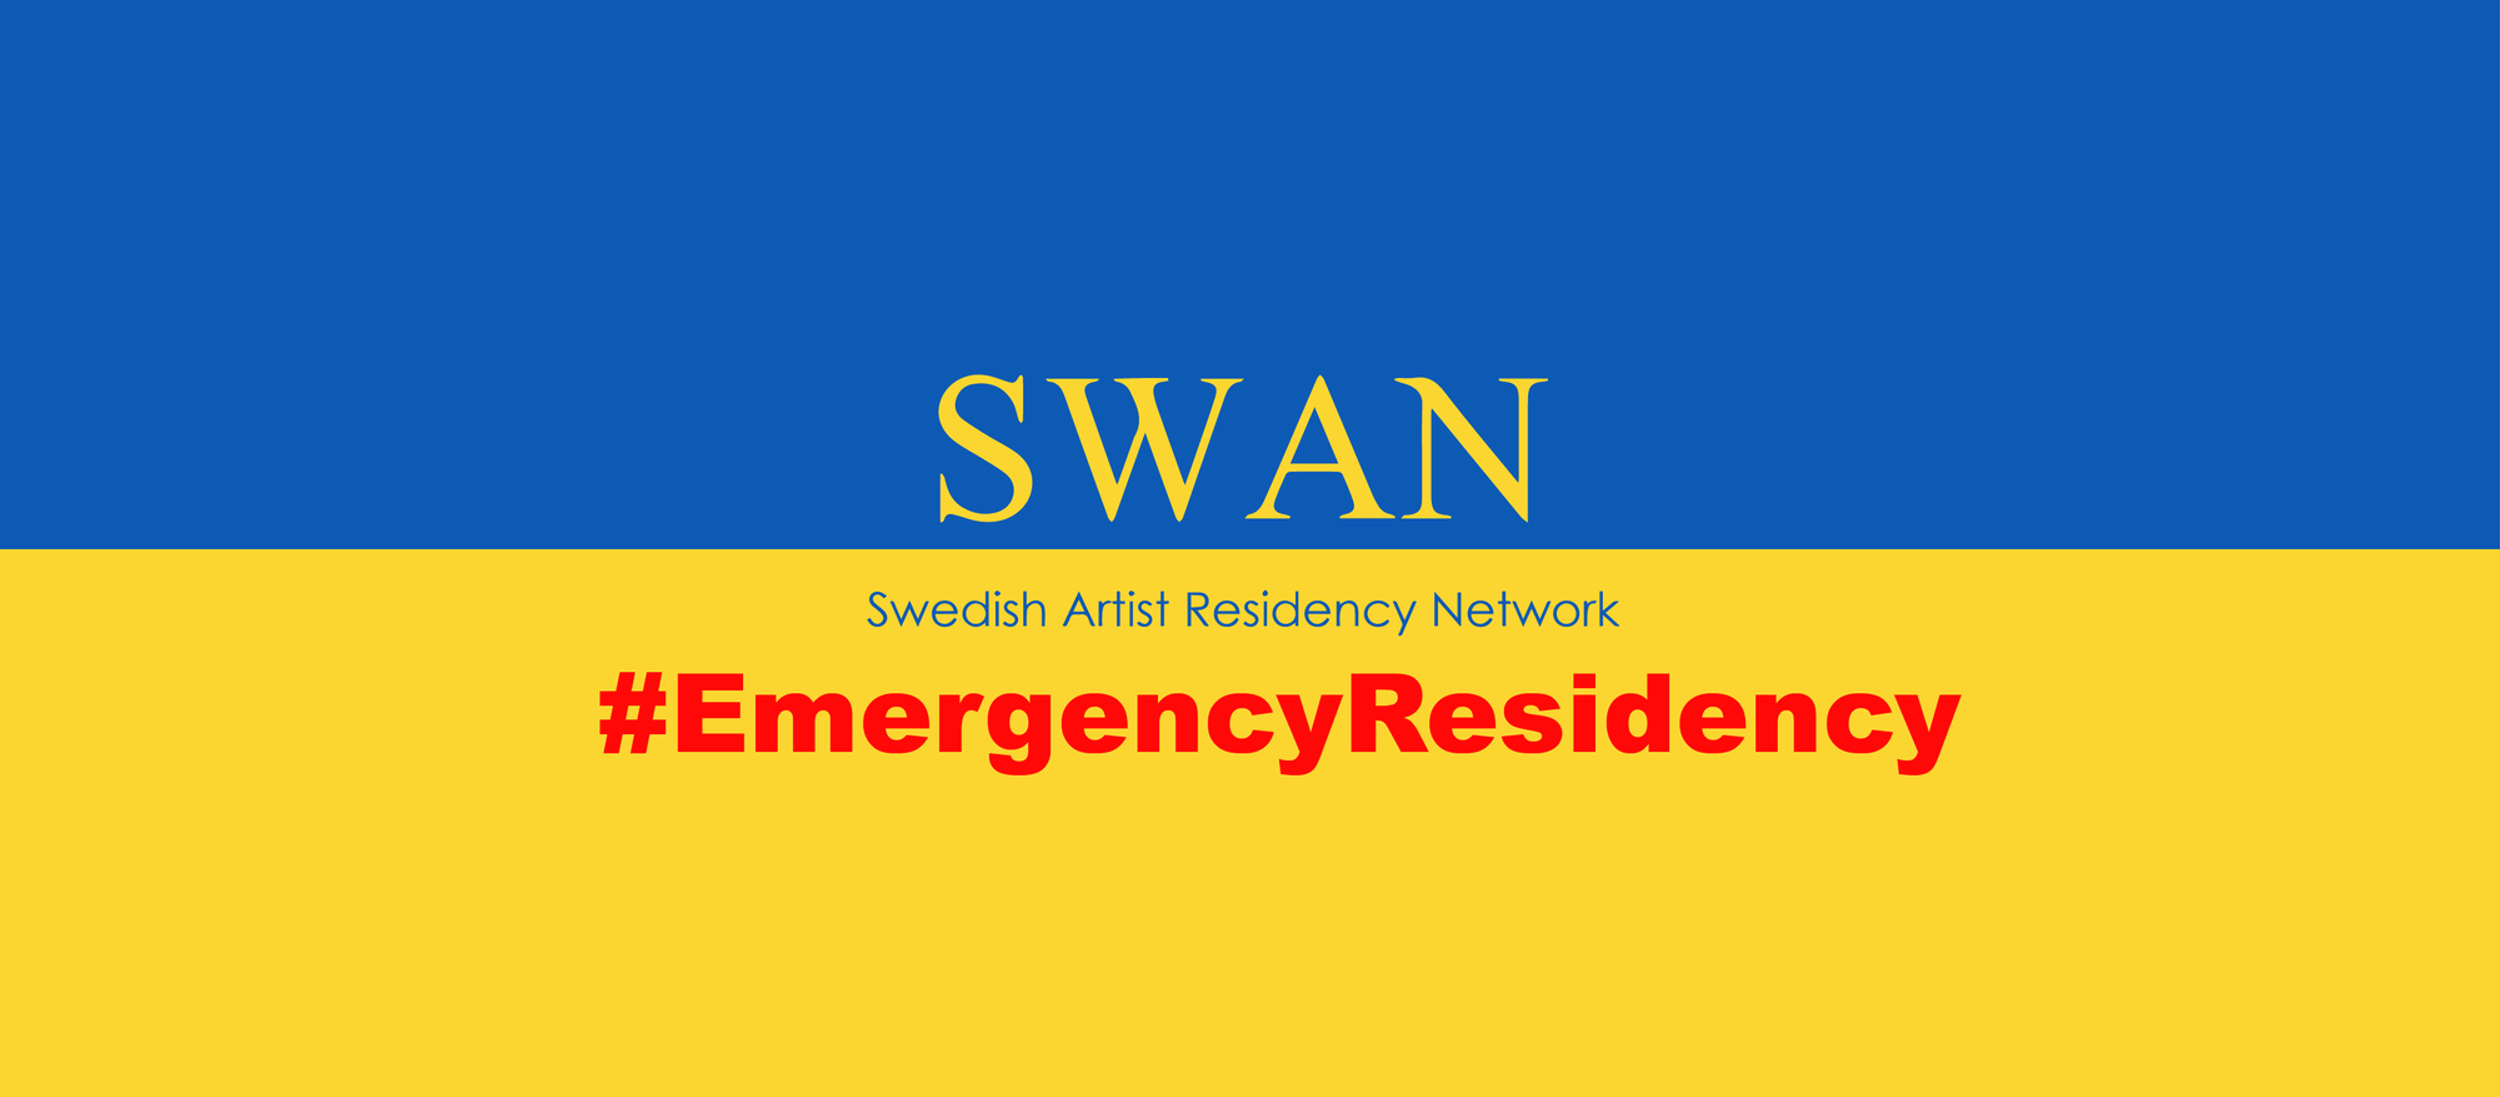 SWAN Residency Network – Emergency Residency